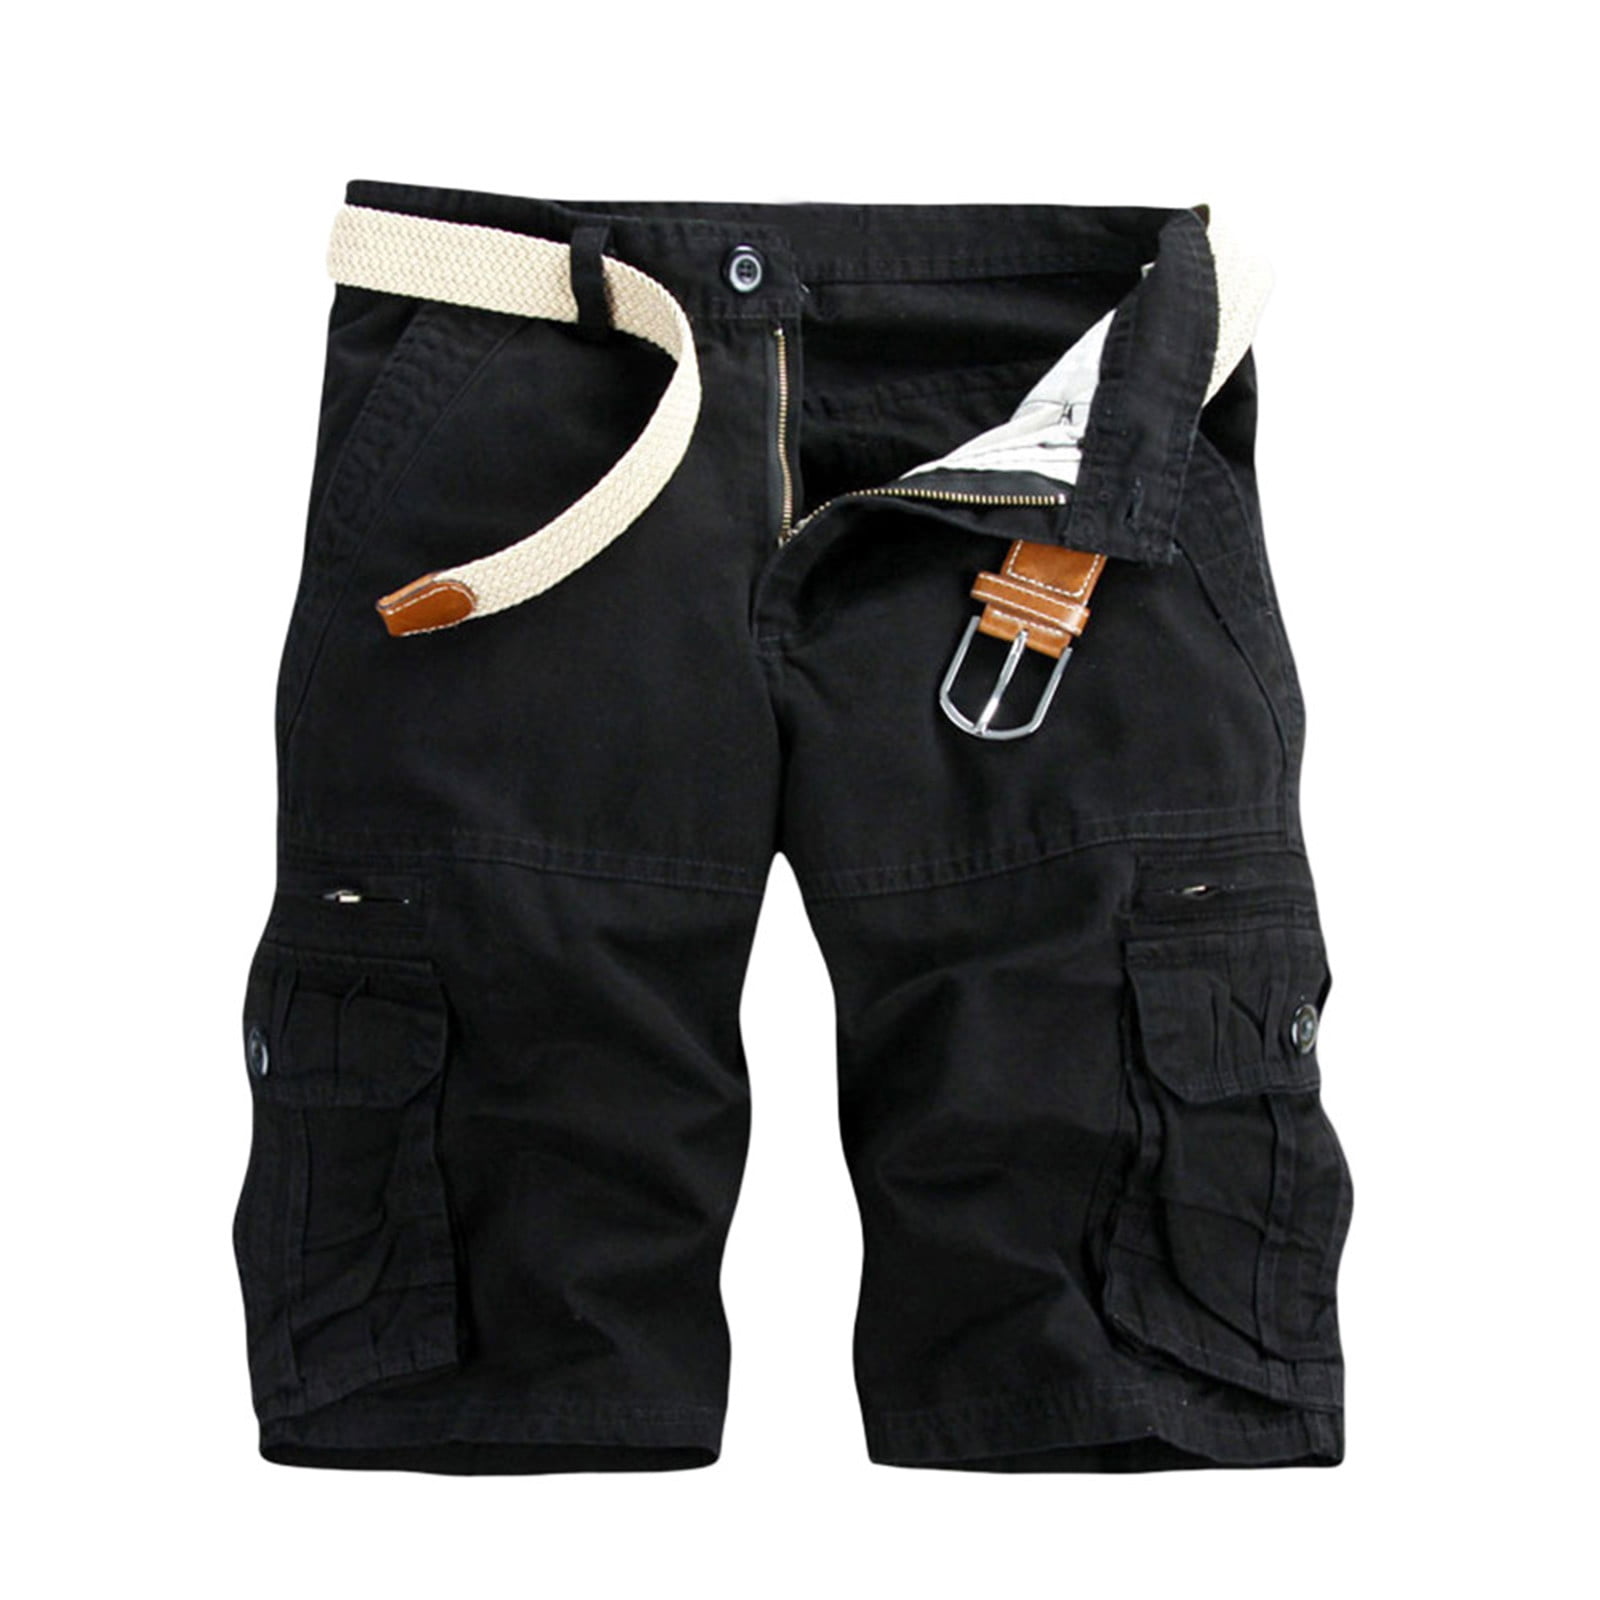 BSDJILFG Cargo Pants for Men Trendy 5